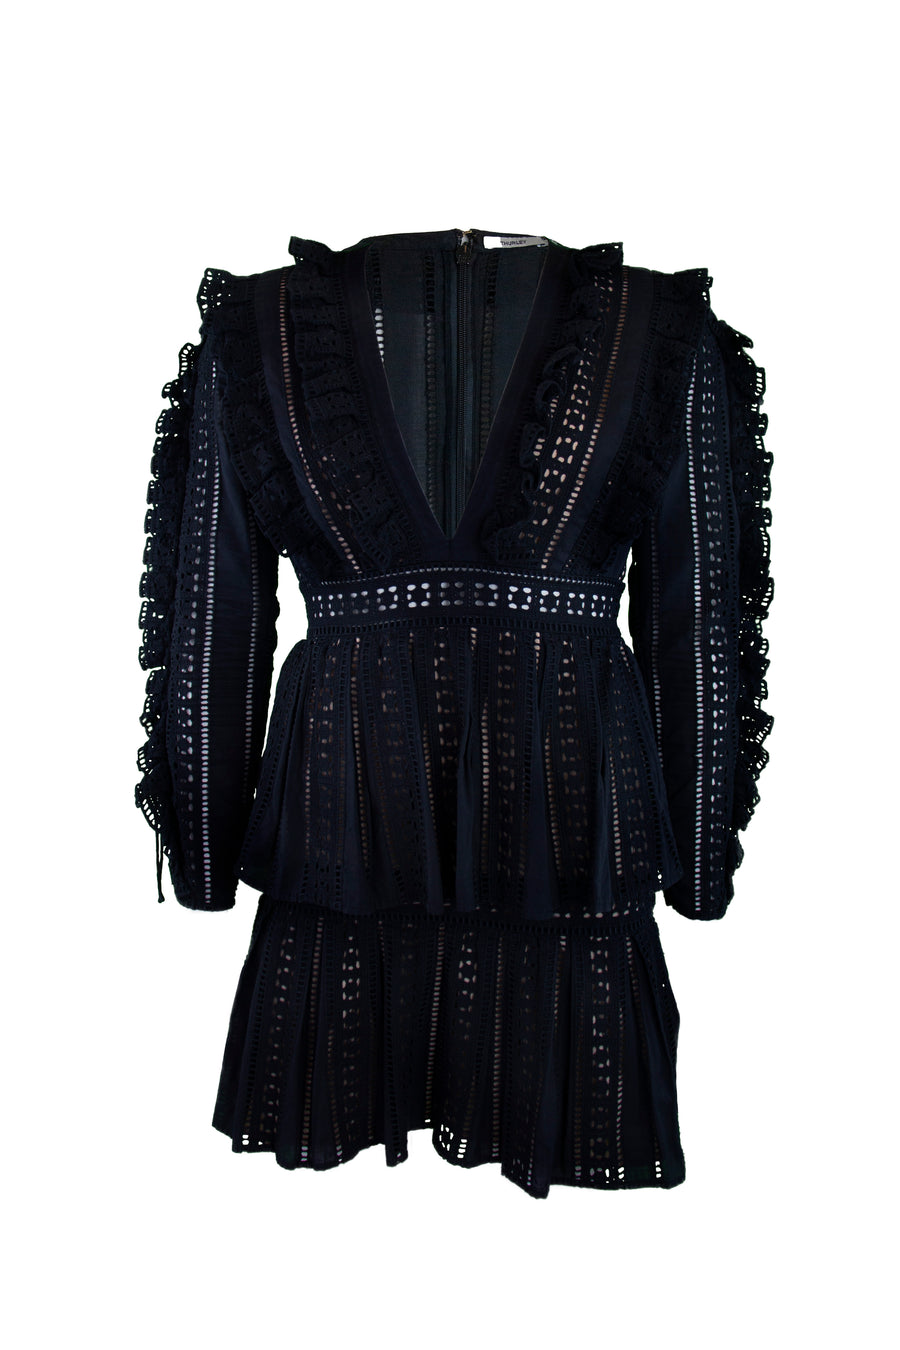 THURLEY - Black Mini Dress